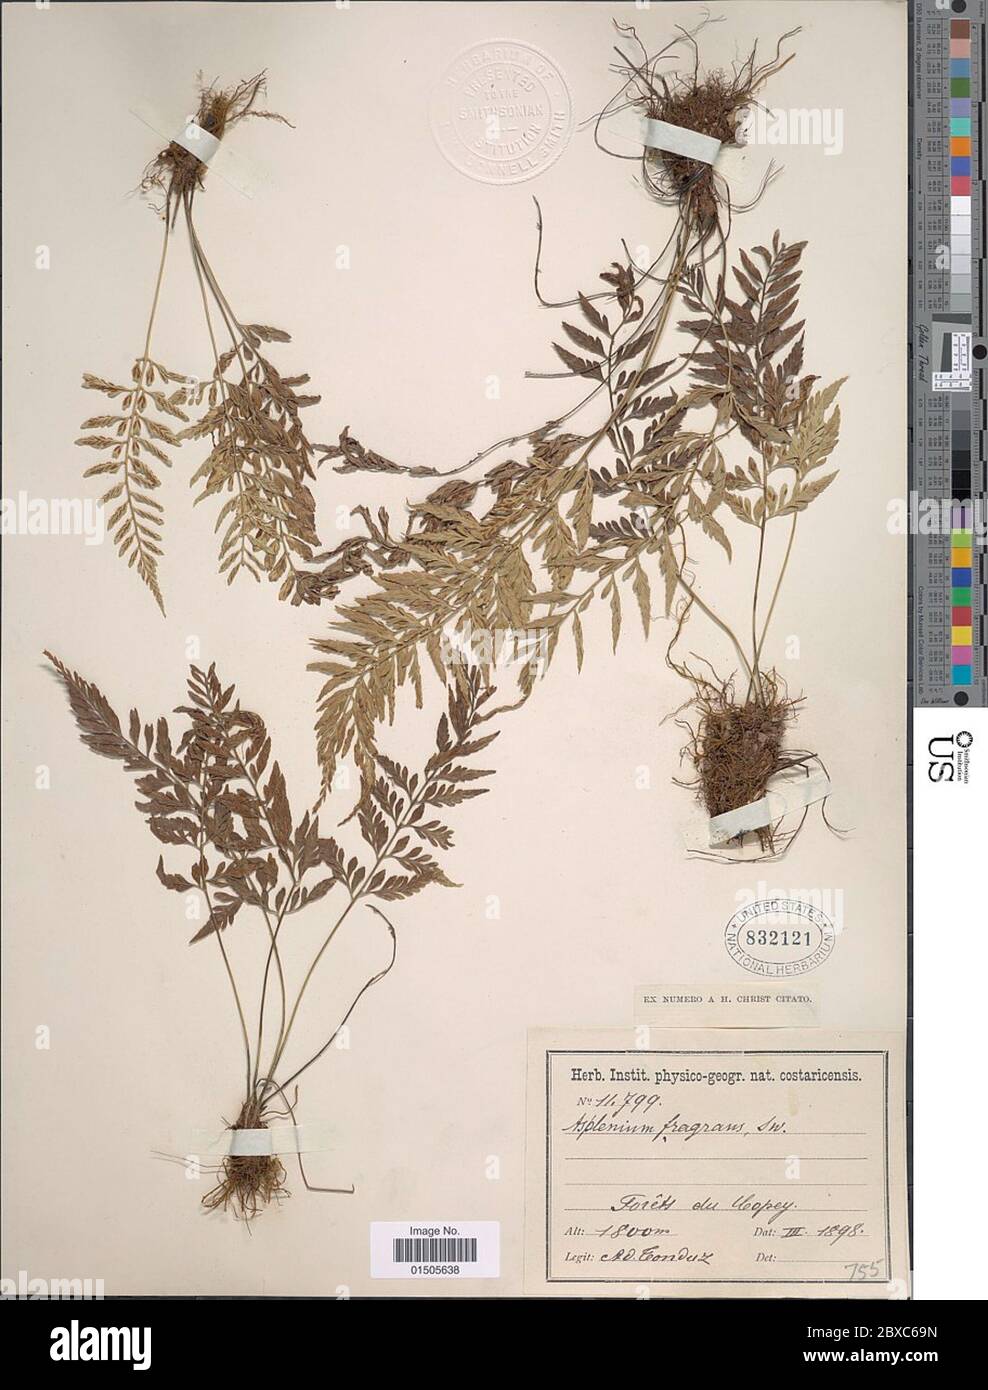 Asplenium auritum var moritzianum Hieron Asplenium auritum var moritzianum Hieron. Stock Photo